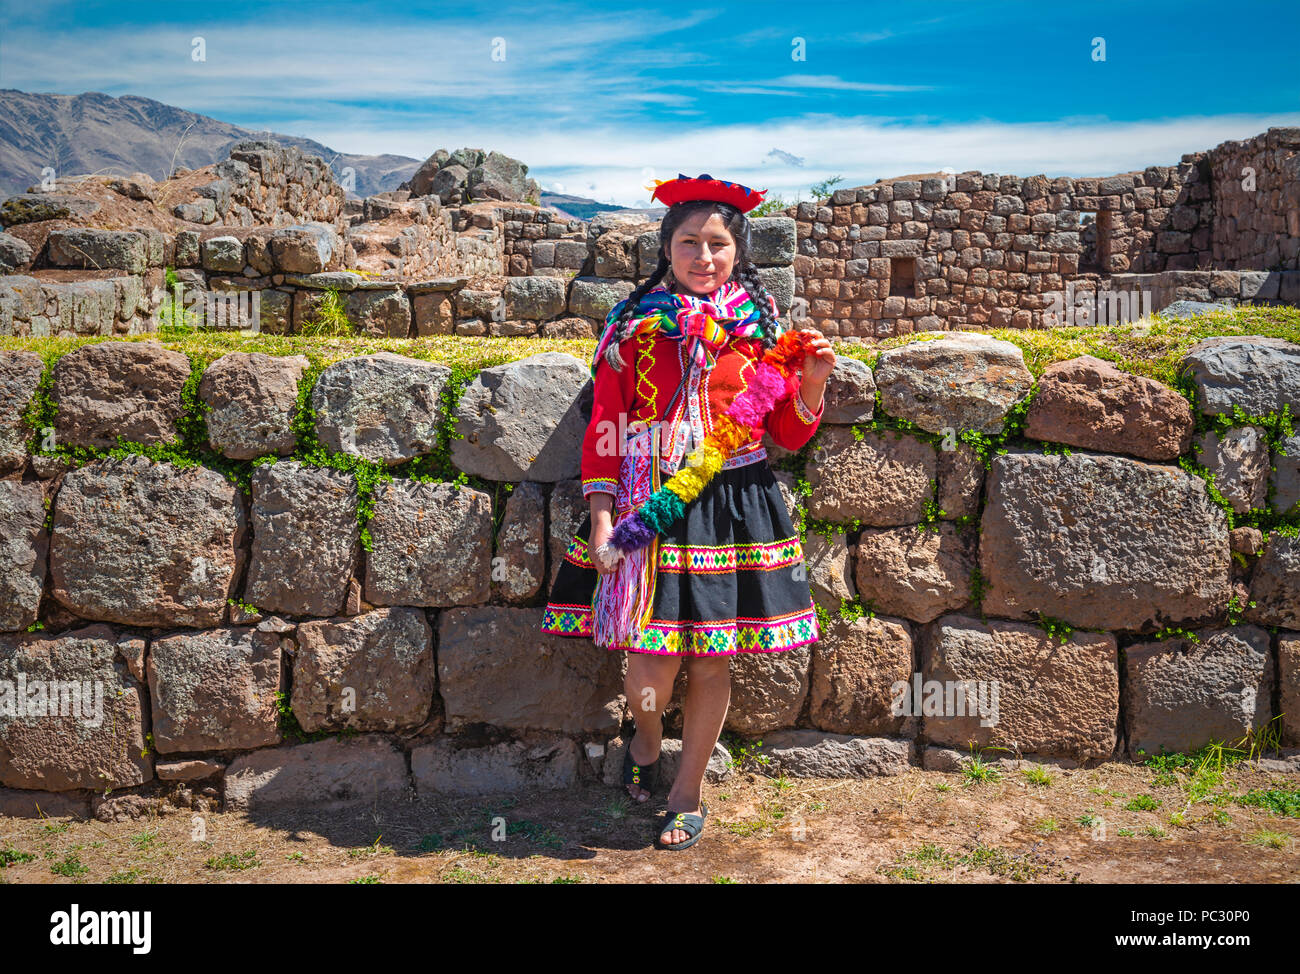 Los jóvenes indígenas quechuas dama en ropa tradicional y peinado dentro de las ruinas incas de Tipon cerca de la ciudad del Cusco. Foto de stock